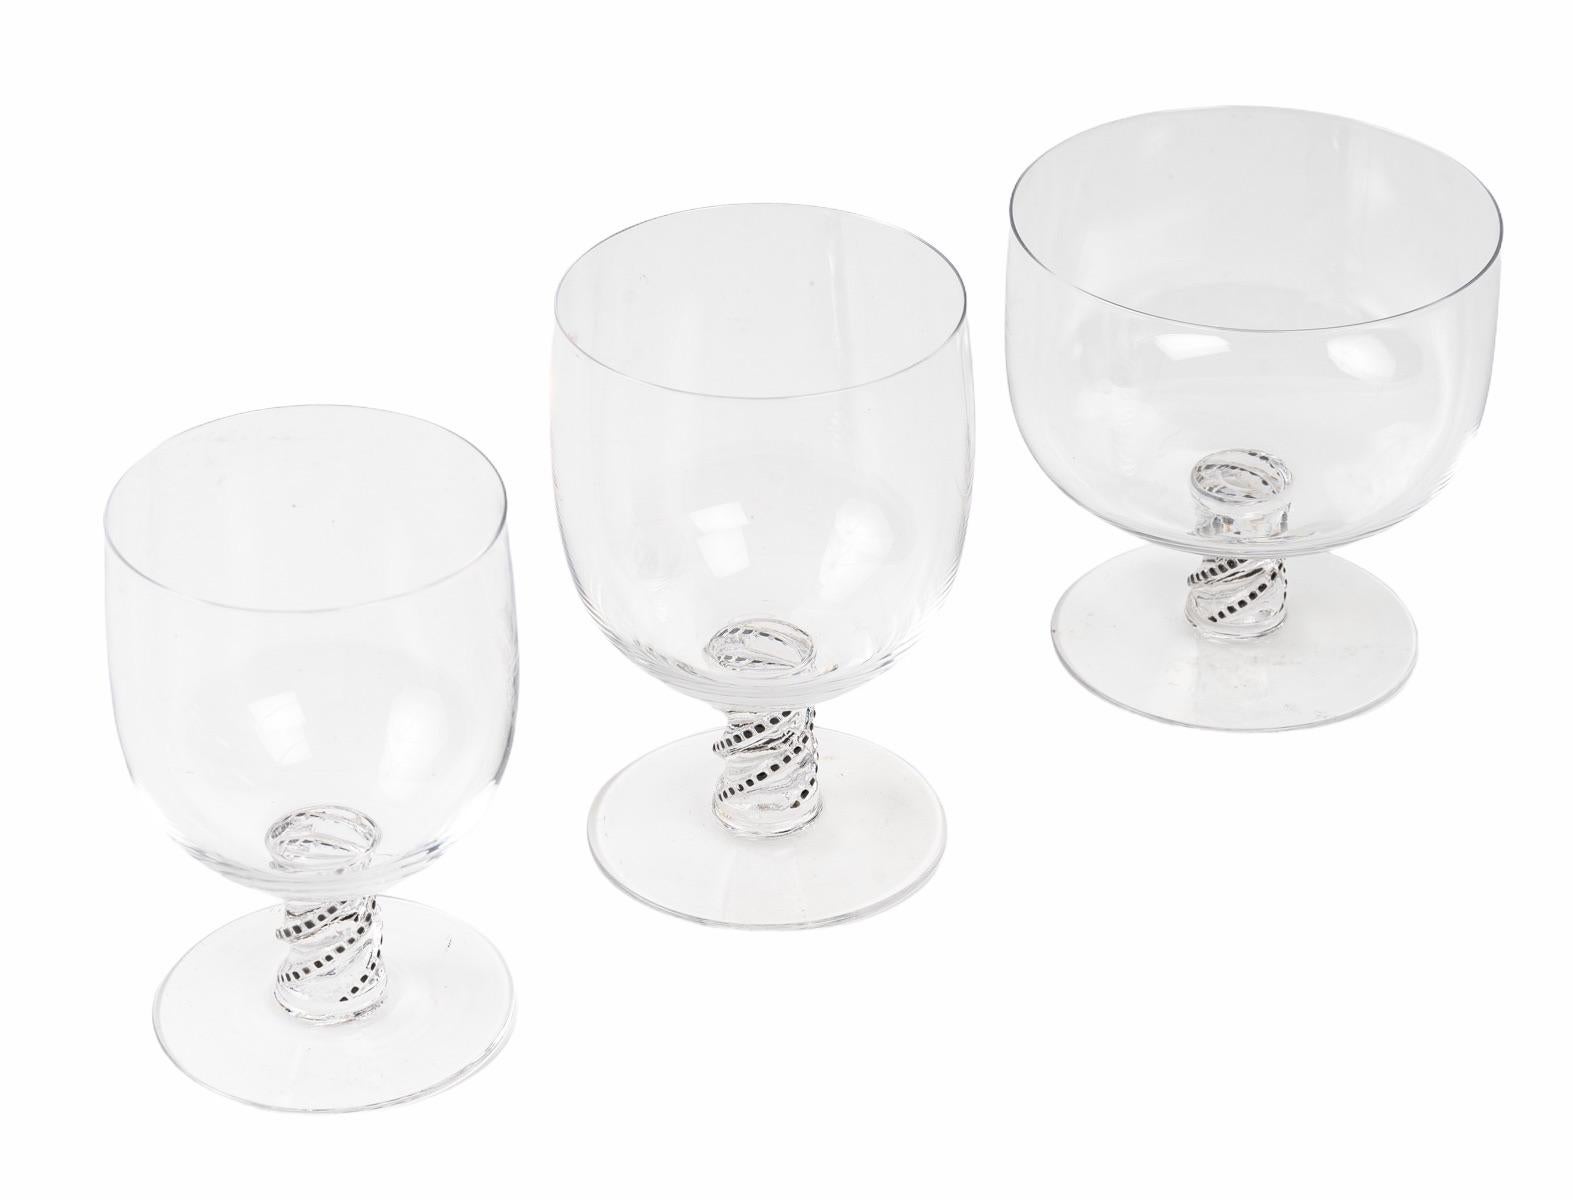 Art Deco René Lalique Complete Set 24 Pieces Enameled Glasses Beaune Champagne Water Wine